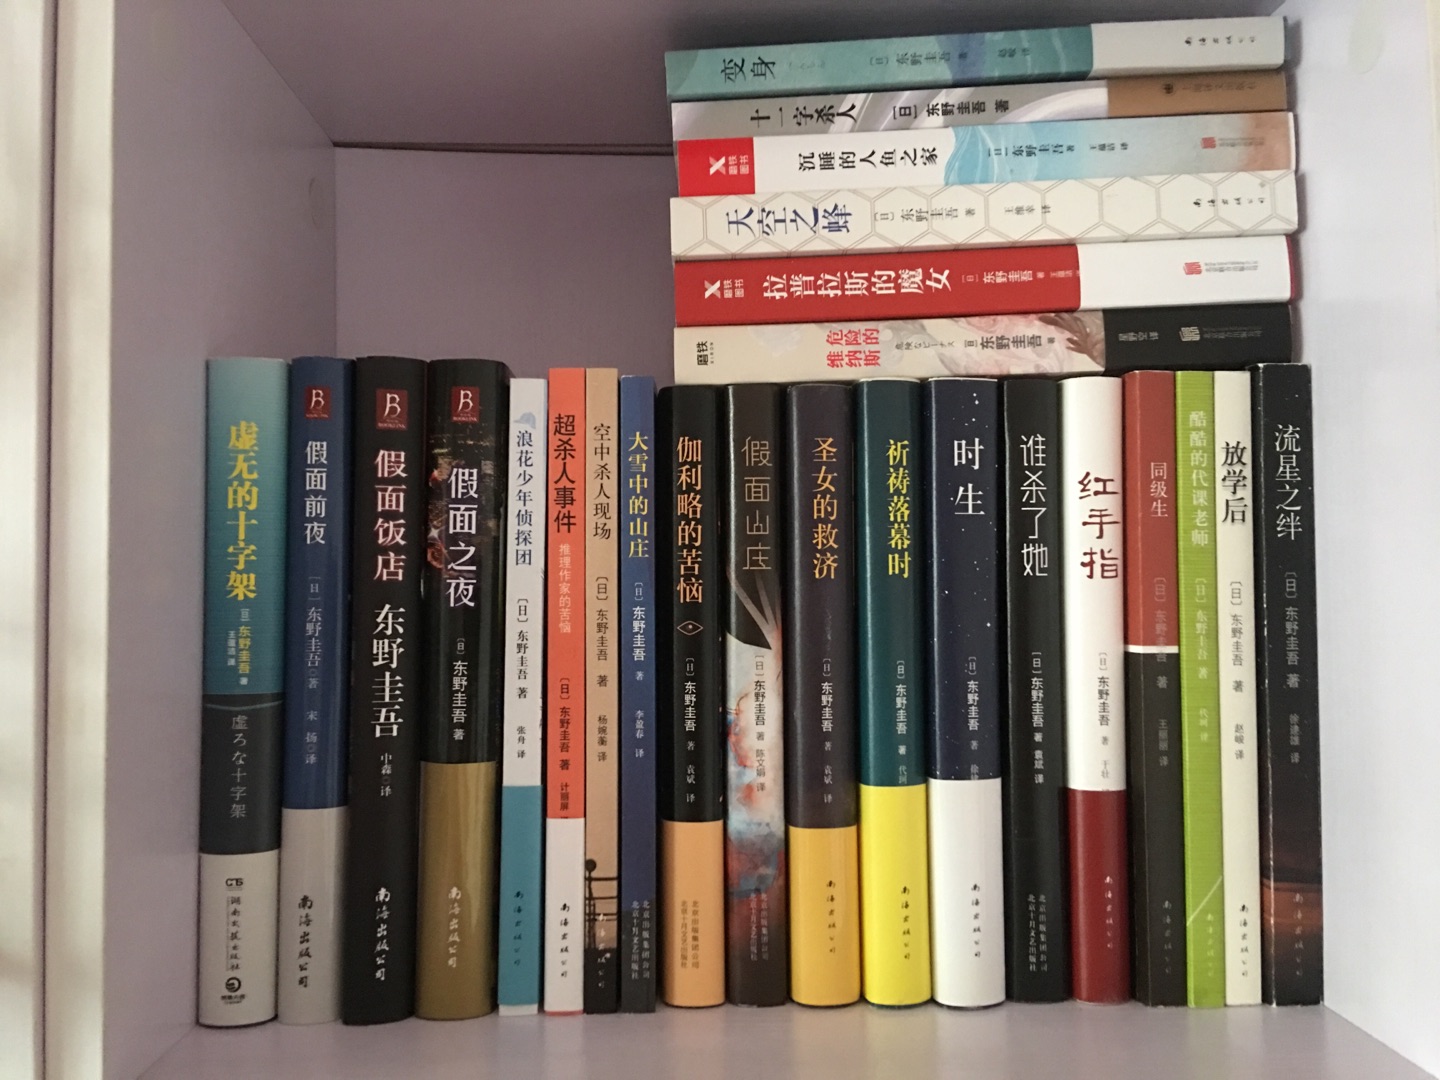 趁着的满减优惠活动，入手了十几本书，都是东野圭*的，非常喜欢他的书。